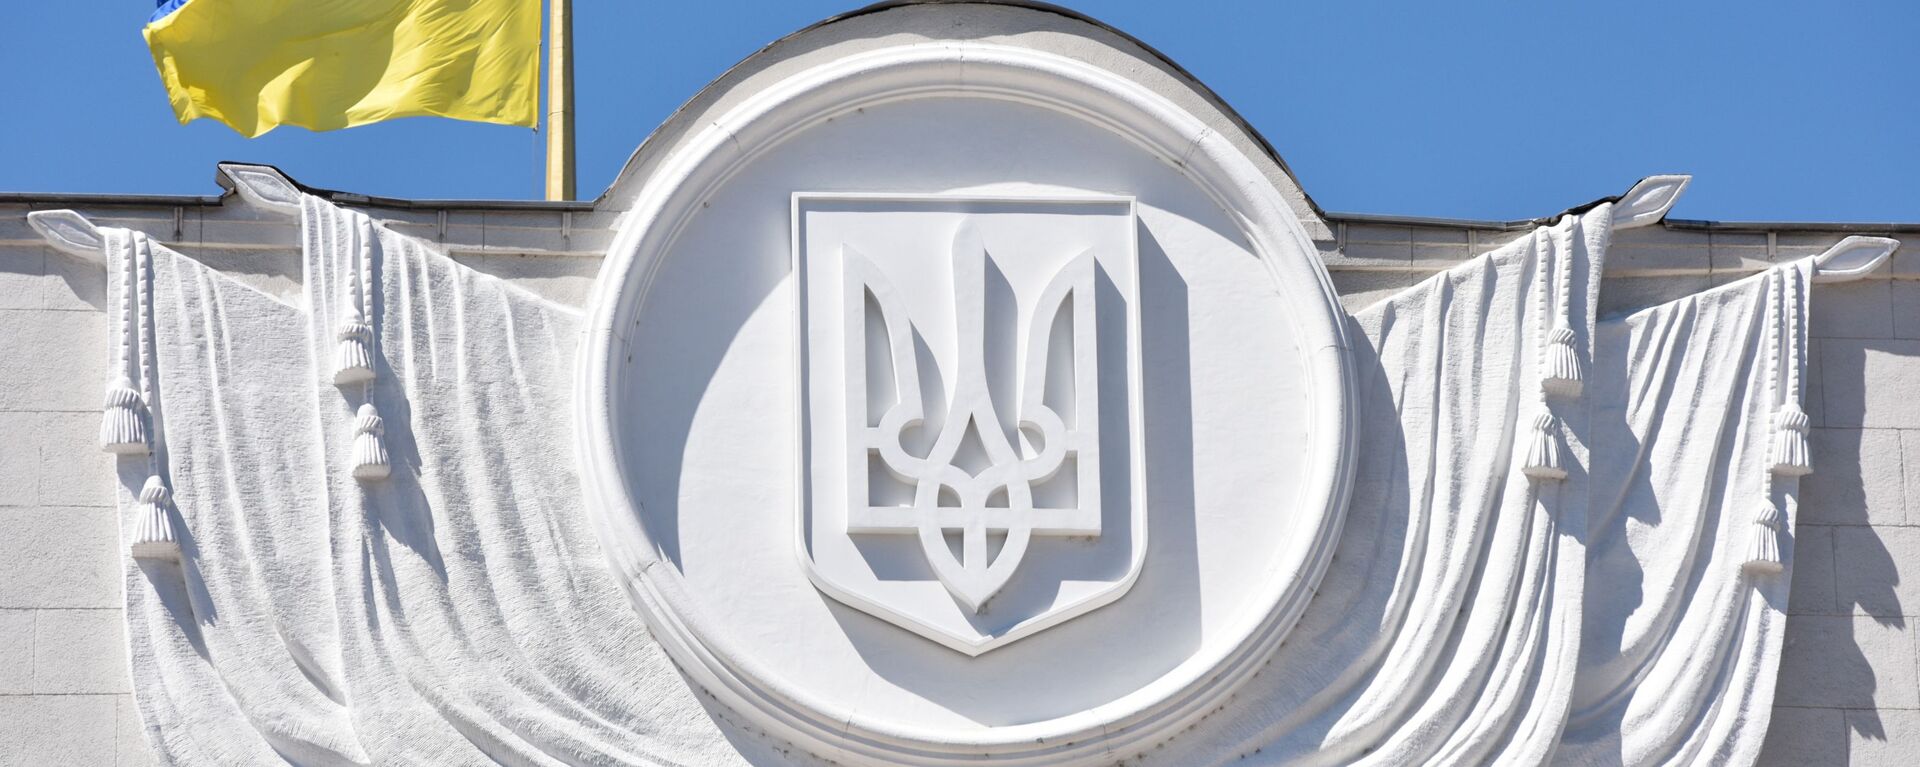 Флаг Украины на здании Верховной рады в Киеве - Sputnik Латвия, 1920, 24.06.2021